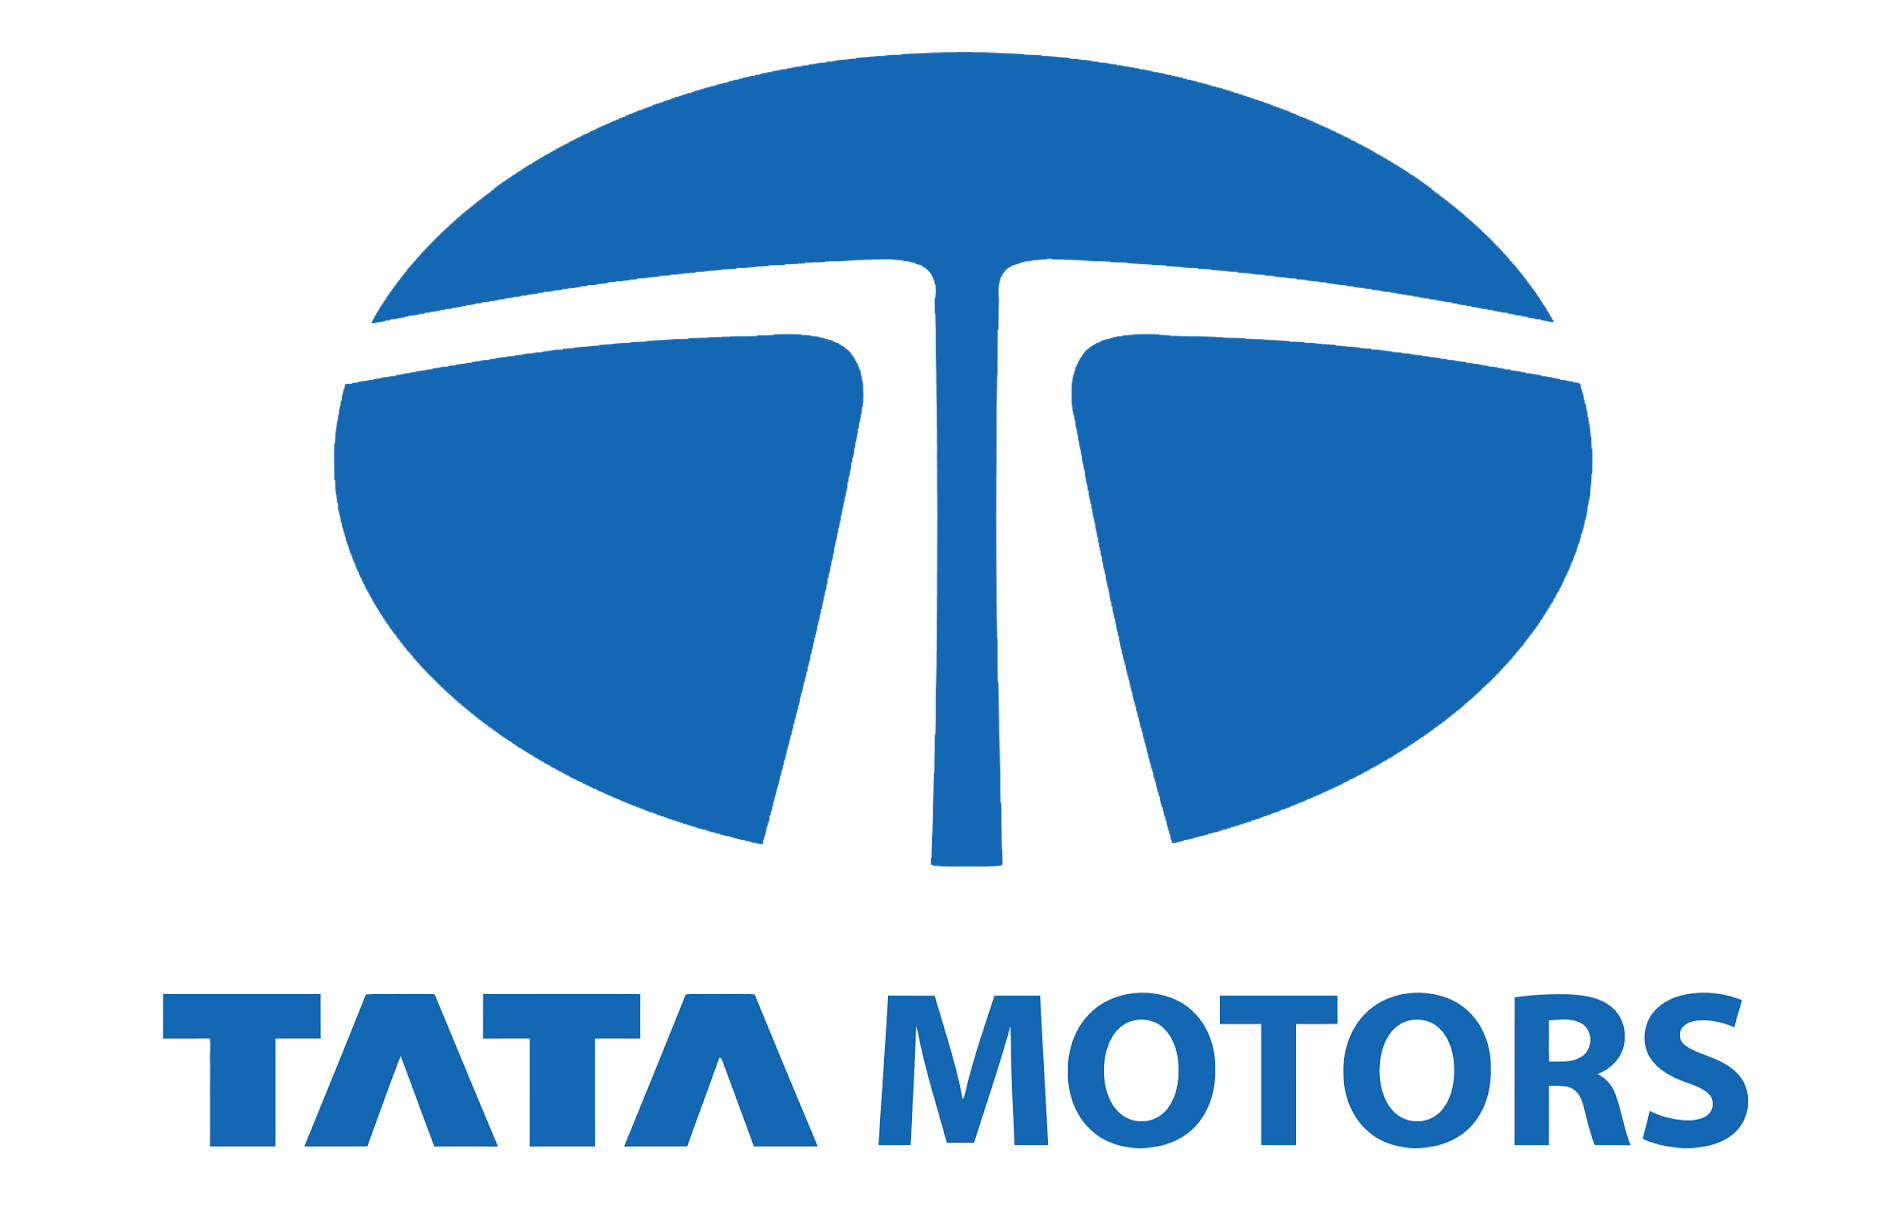 Tata Motors Cars Showroom - Adishakti Cars Logo